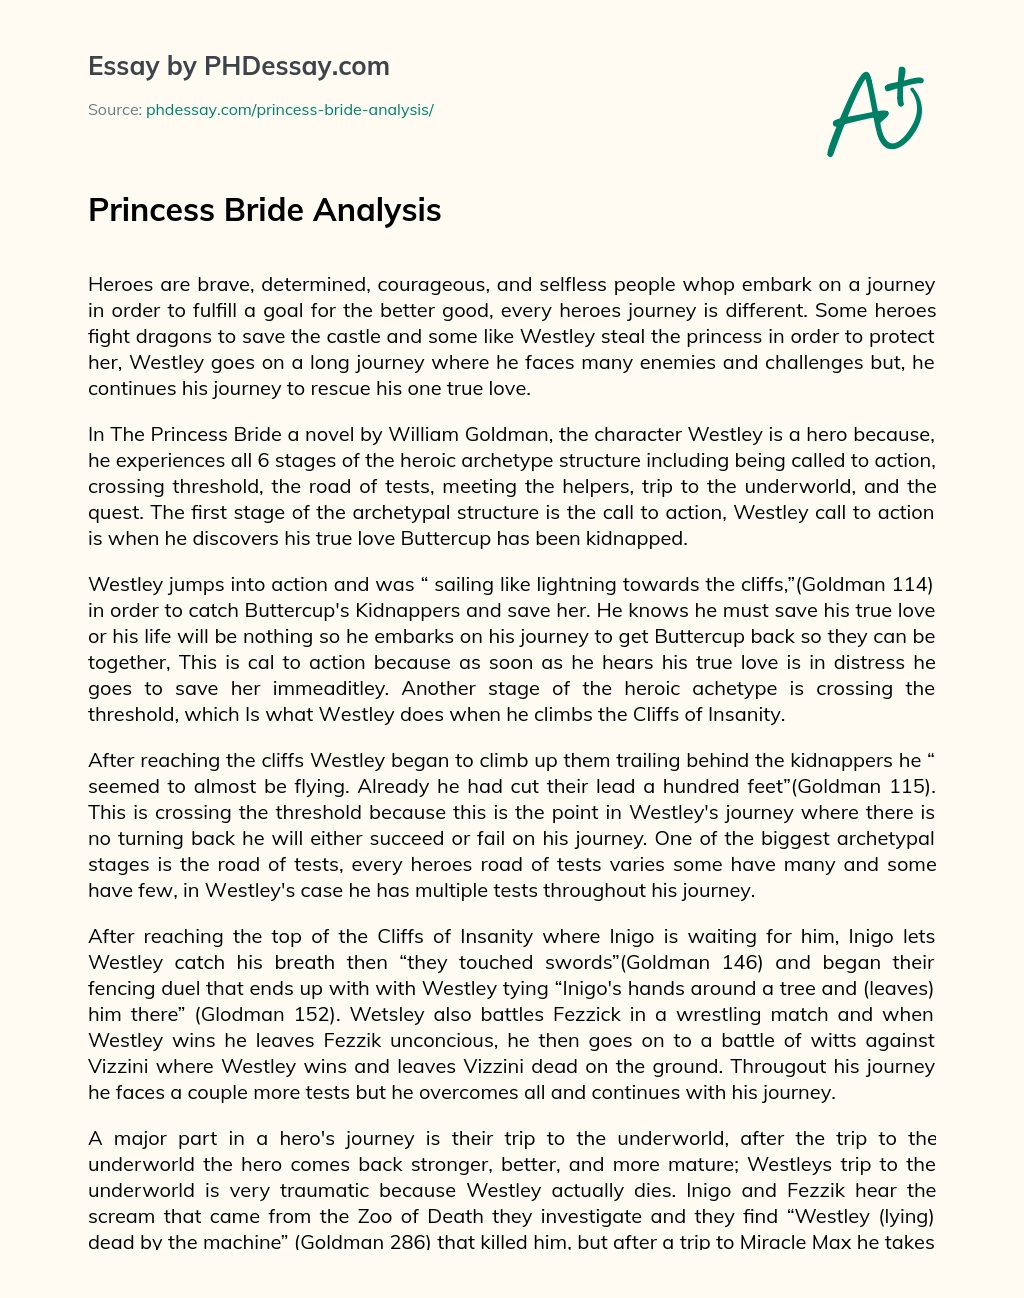 Princess Bride Analysis essay